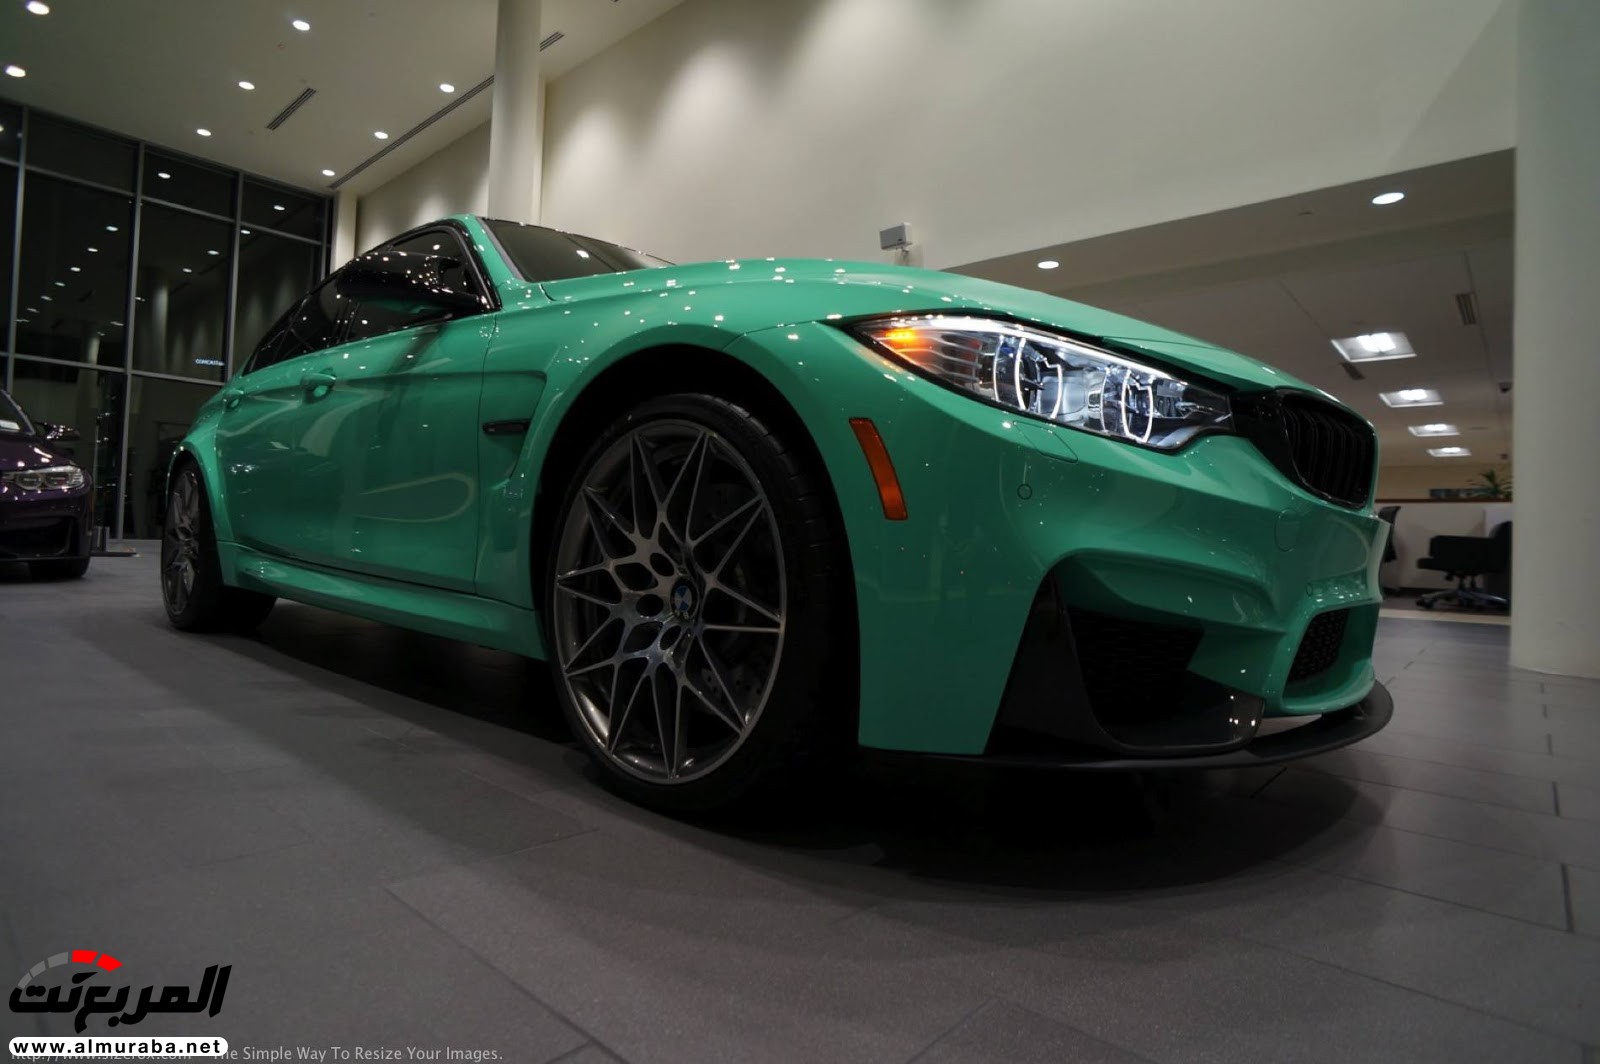 "بالصور" شاهد "بي إم دبليو" F80 M3 الخاصة بطلاء النعناع الأخضر BMW 113